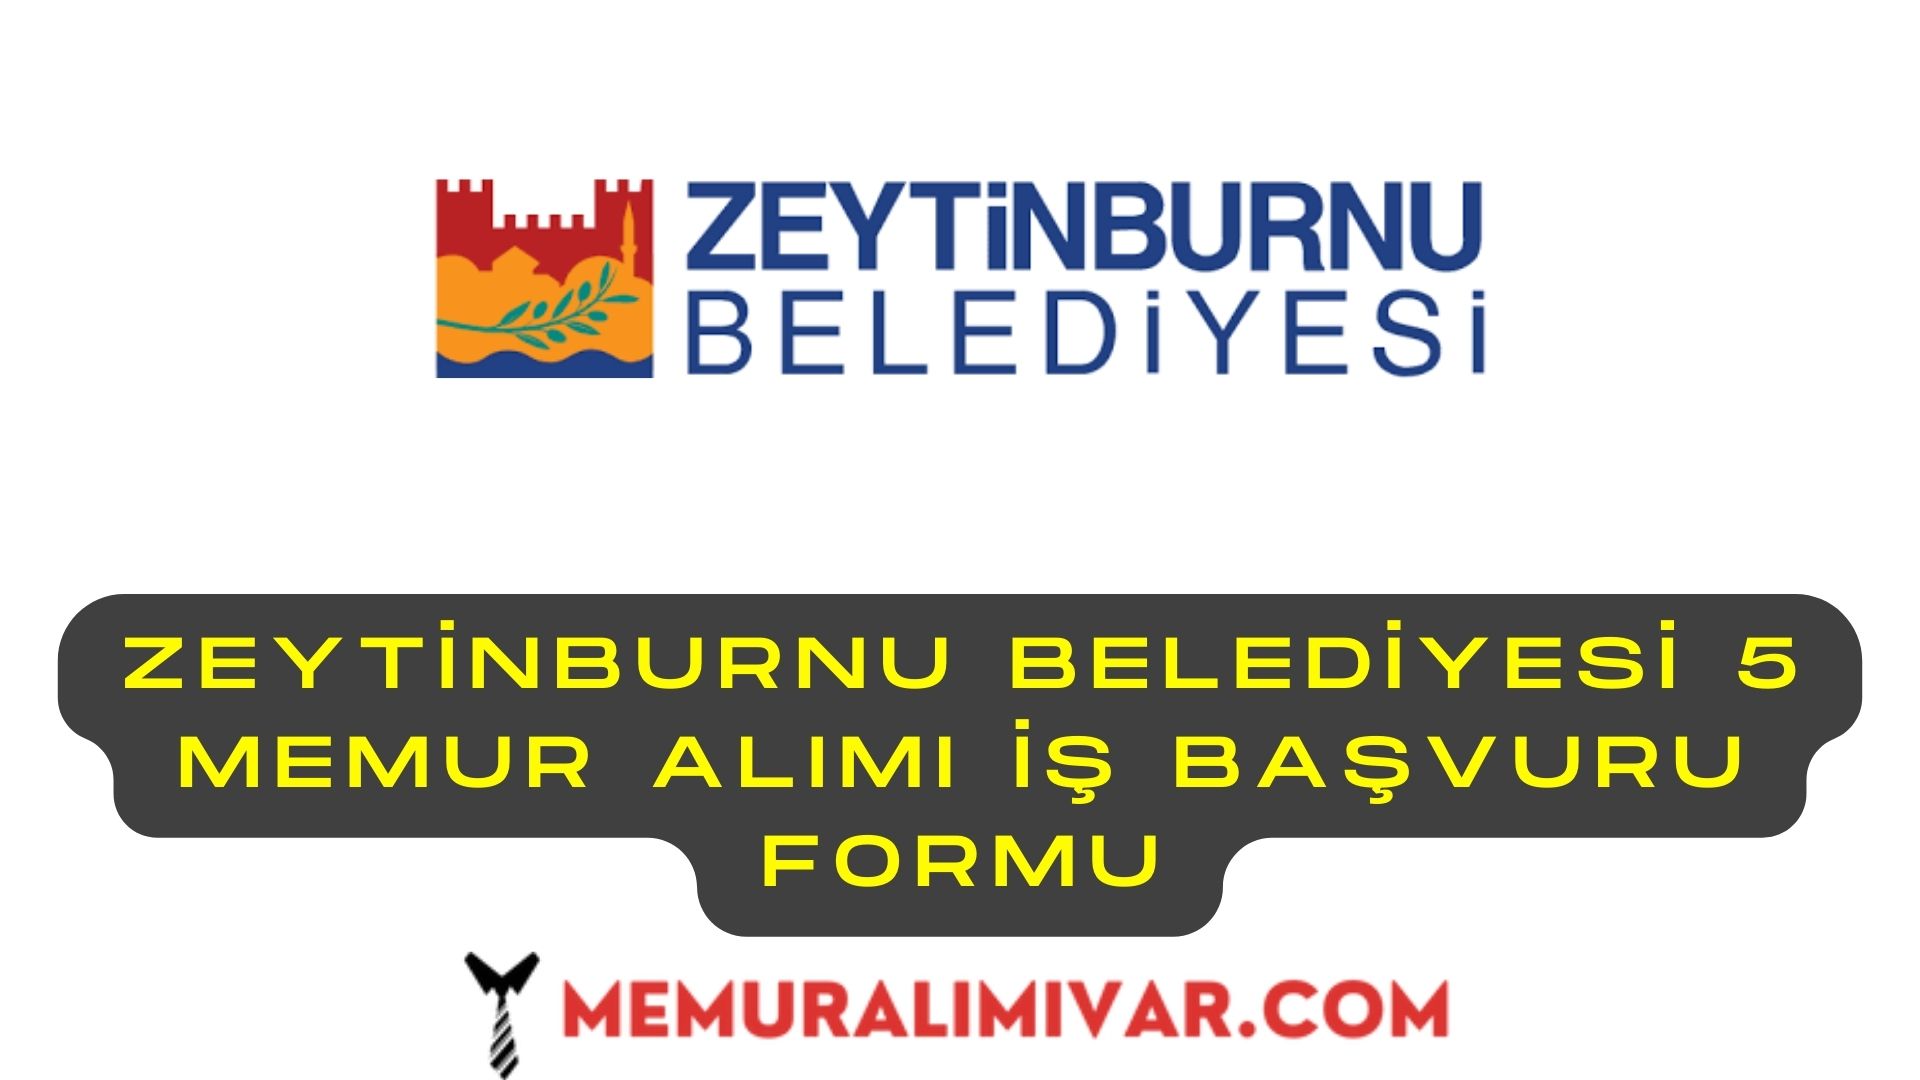 Zeytinburnu Belediyesi 5 Memur Alımı İş Başvuru Formu